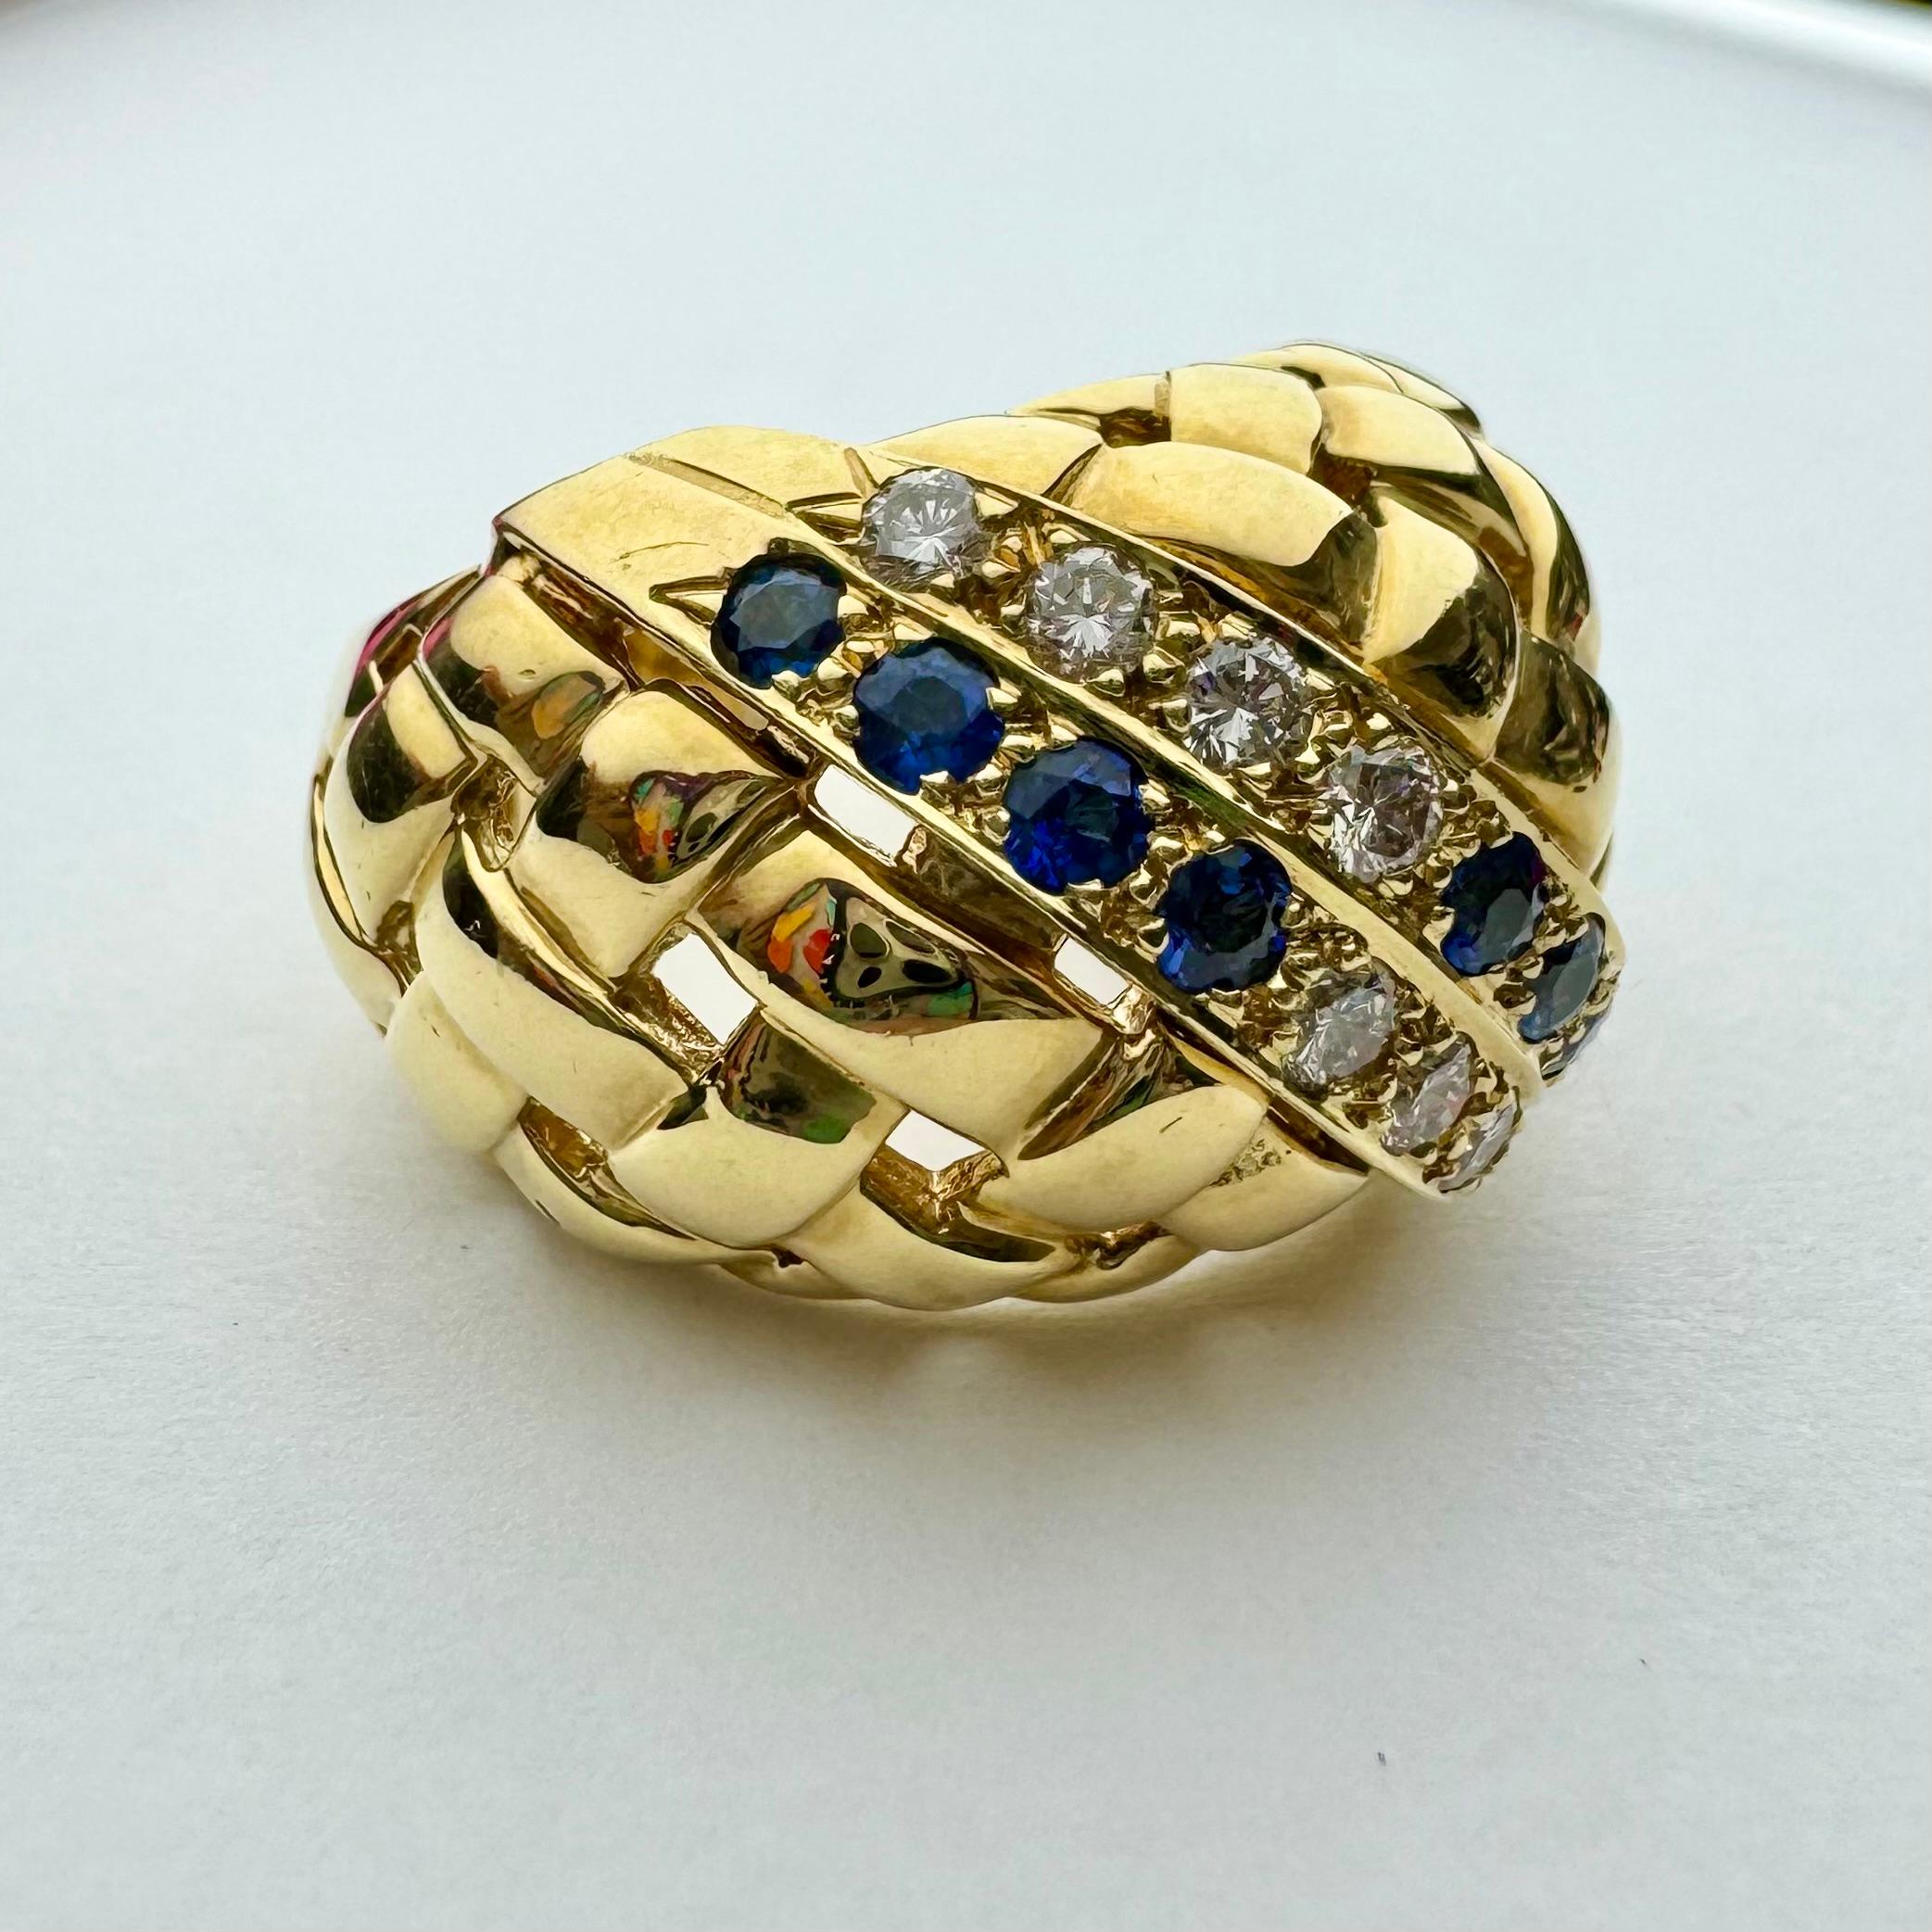 Eleganter und stattlicher Kuppelring aus massivem 18-karätigem Gelbgold mit Saphiren und Diamanten. Der Ring zeigt ein wunderschönes, reiches, goldenes Flechtmuster mit zwei Edelsteinbändern, die mit schillernden blauen Saphiren und funkelnden